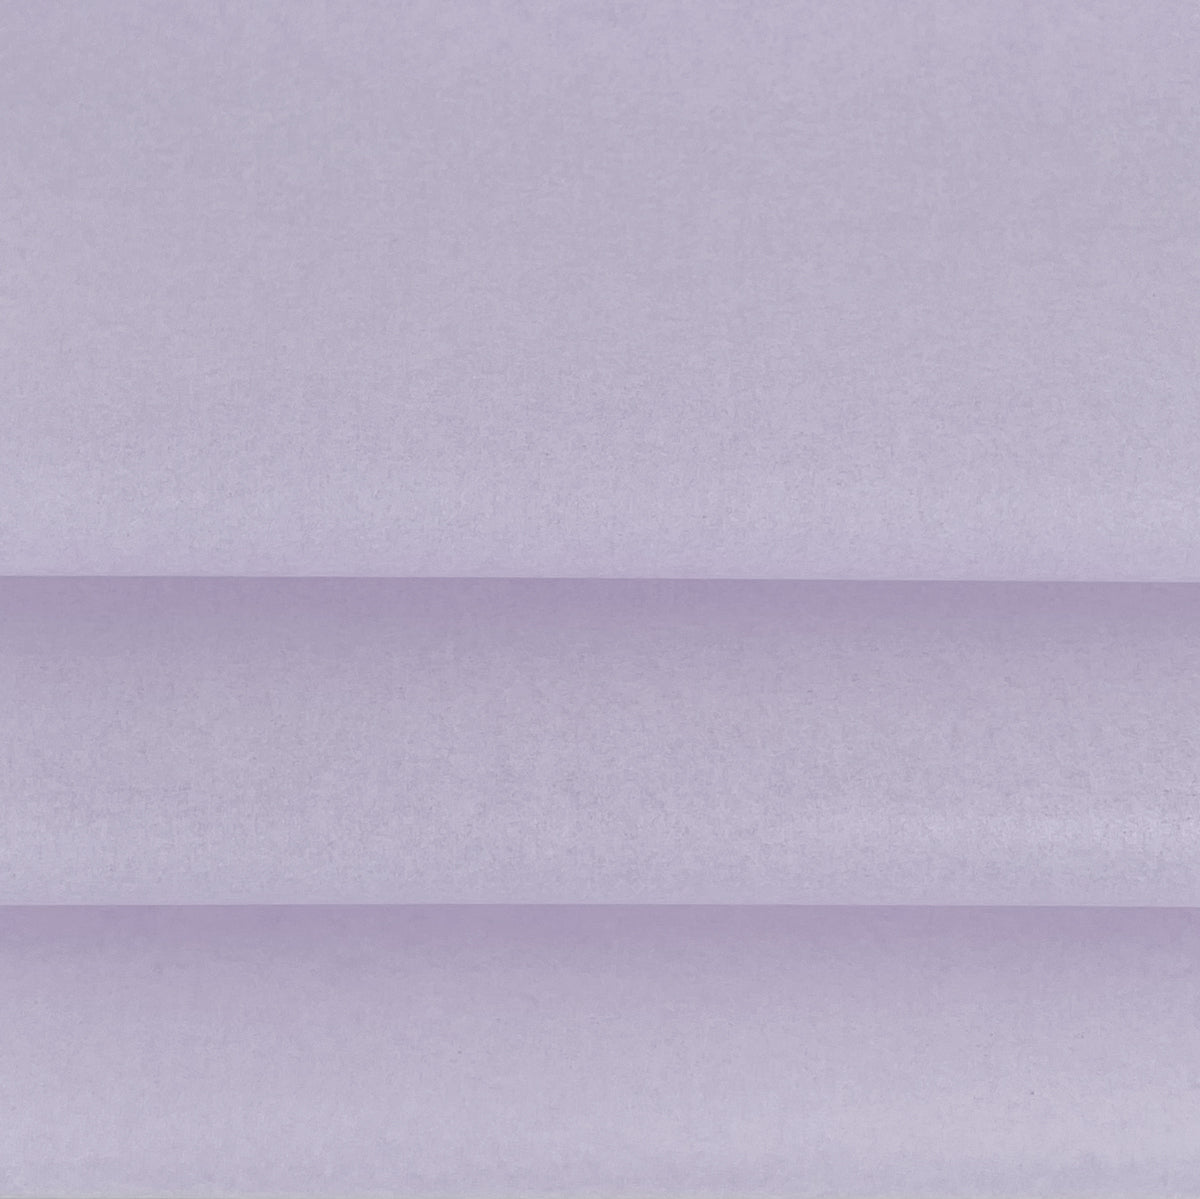 Vloeipapier - Verschillende paarse kleuren